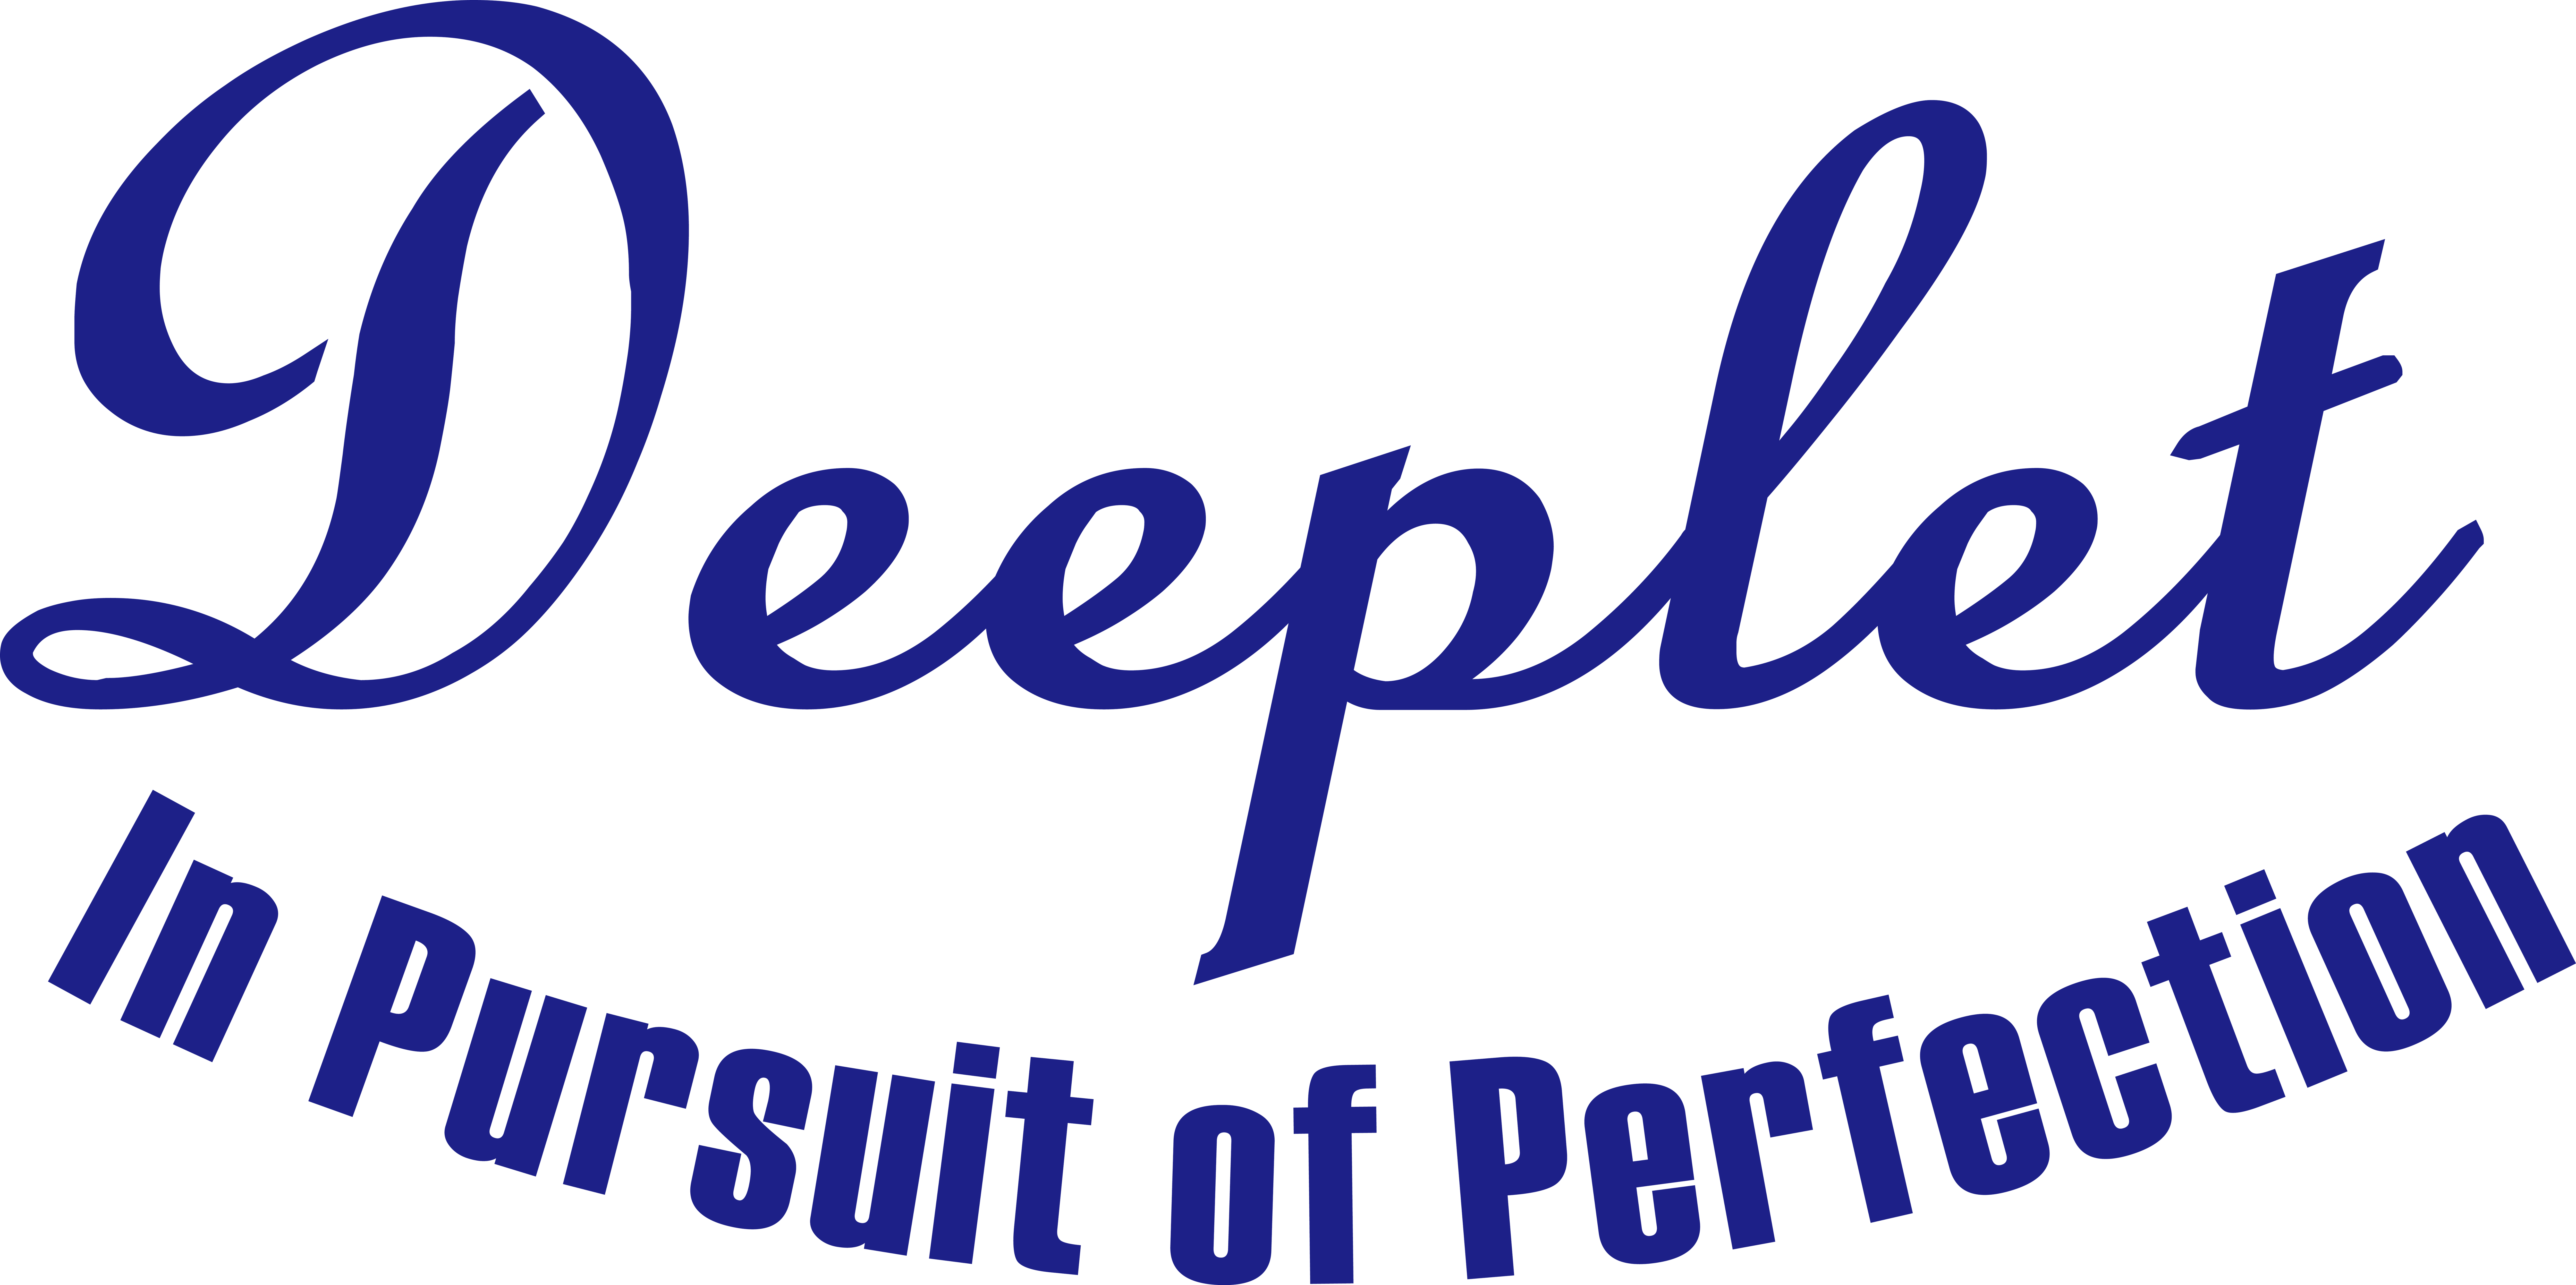 Deeplet Technology Corp